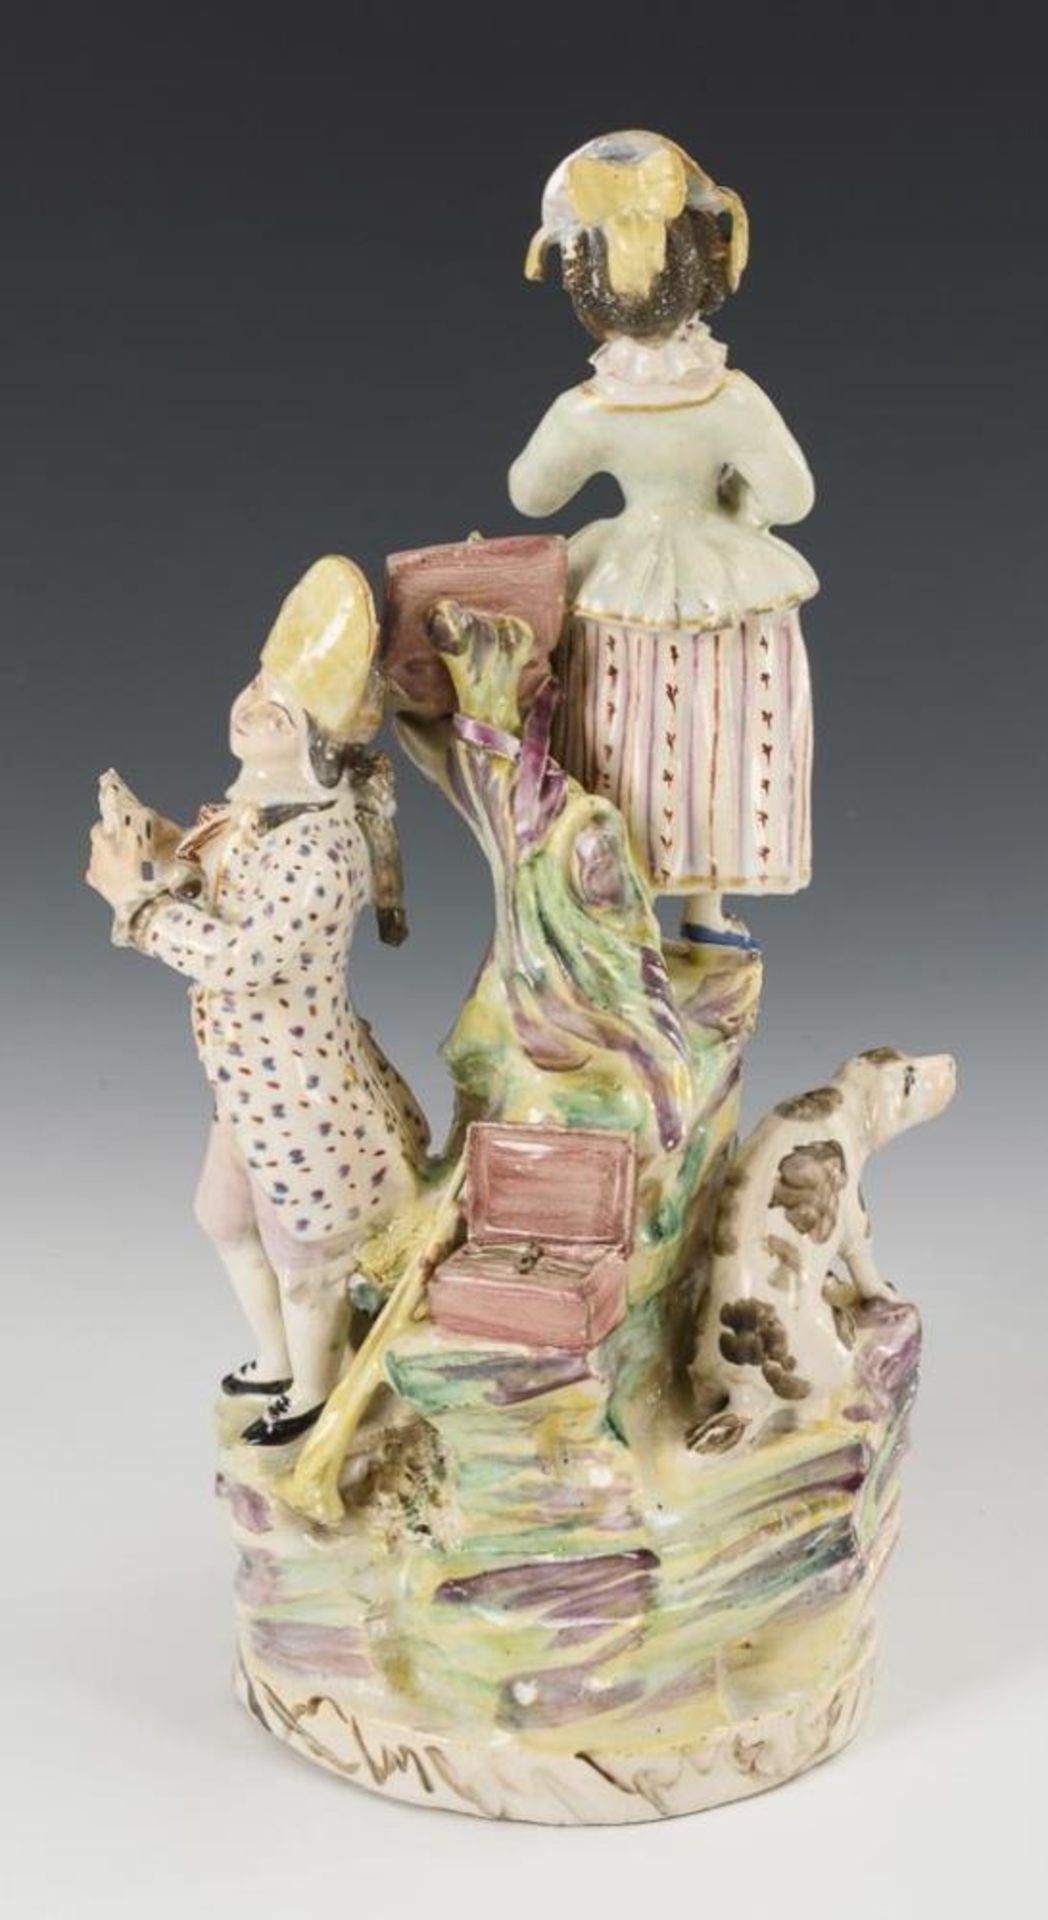 Barocke Fayence-Figurengruppe mit Hund und Affe. - Bild 4 aus 4